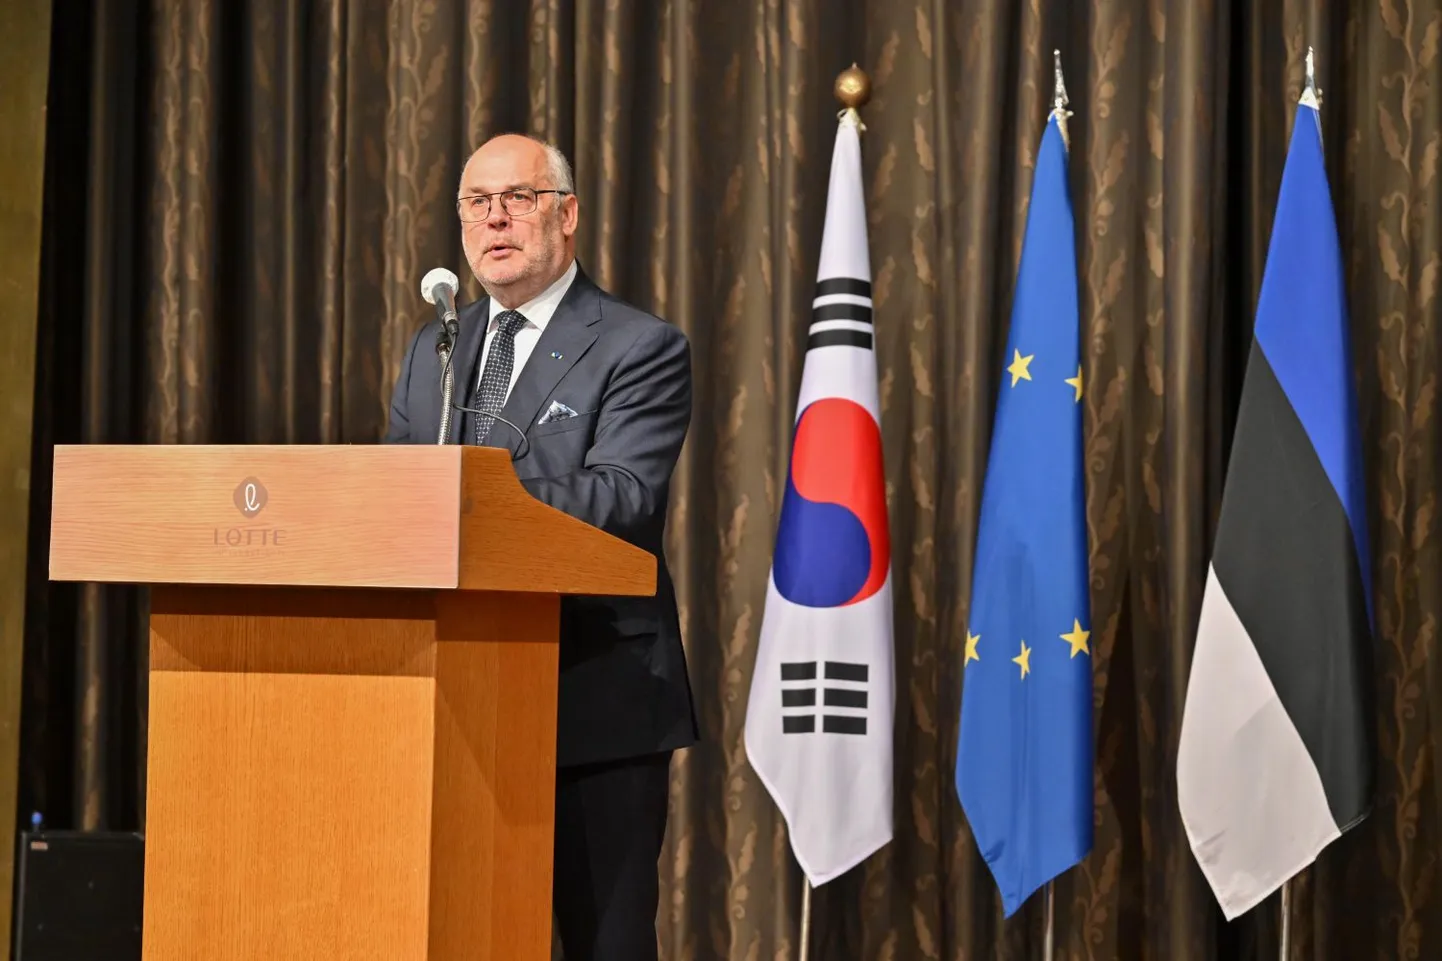 Президент Алар Карис открыл посольство Эстонии в Сеуле.